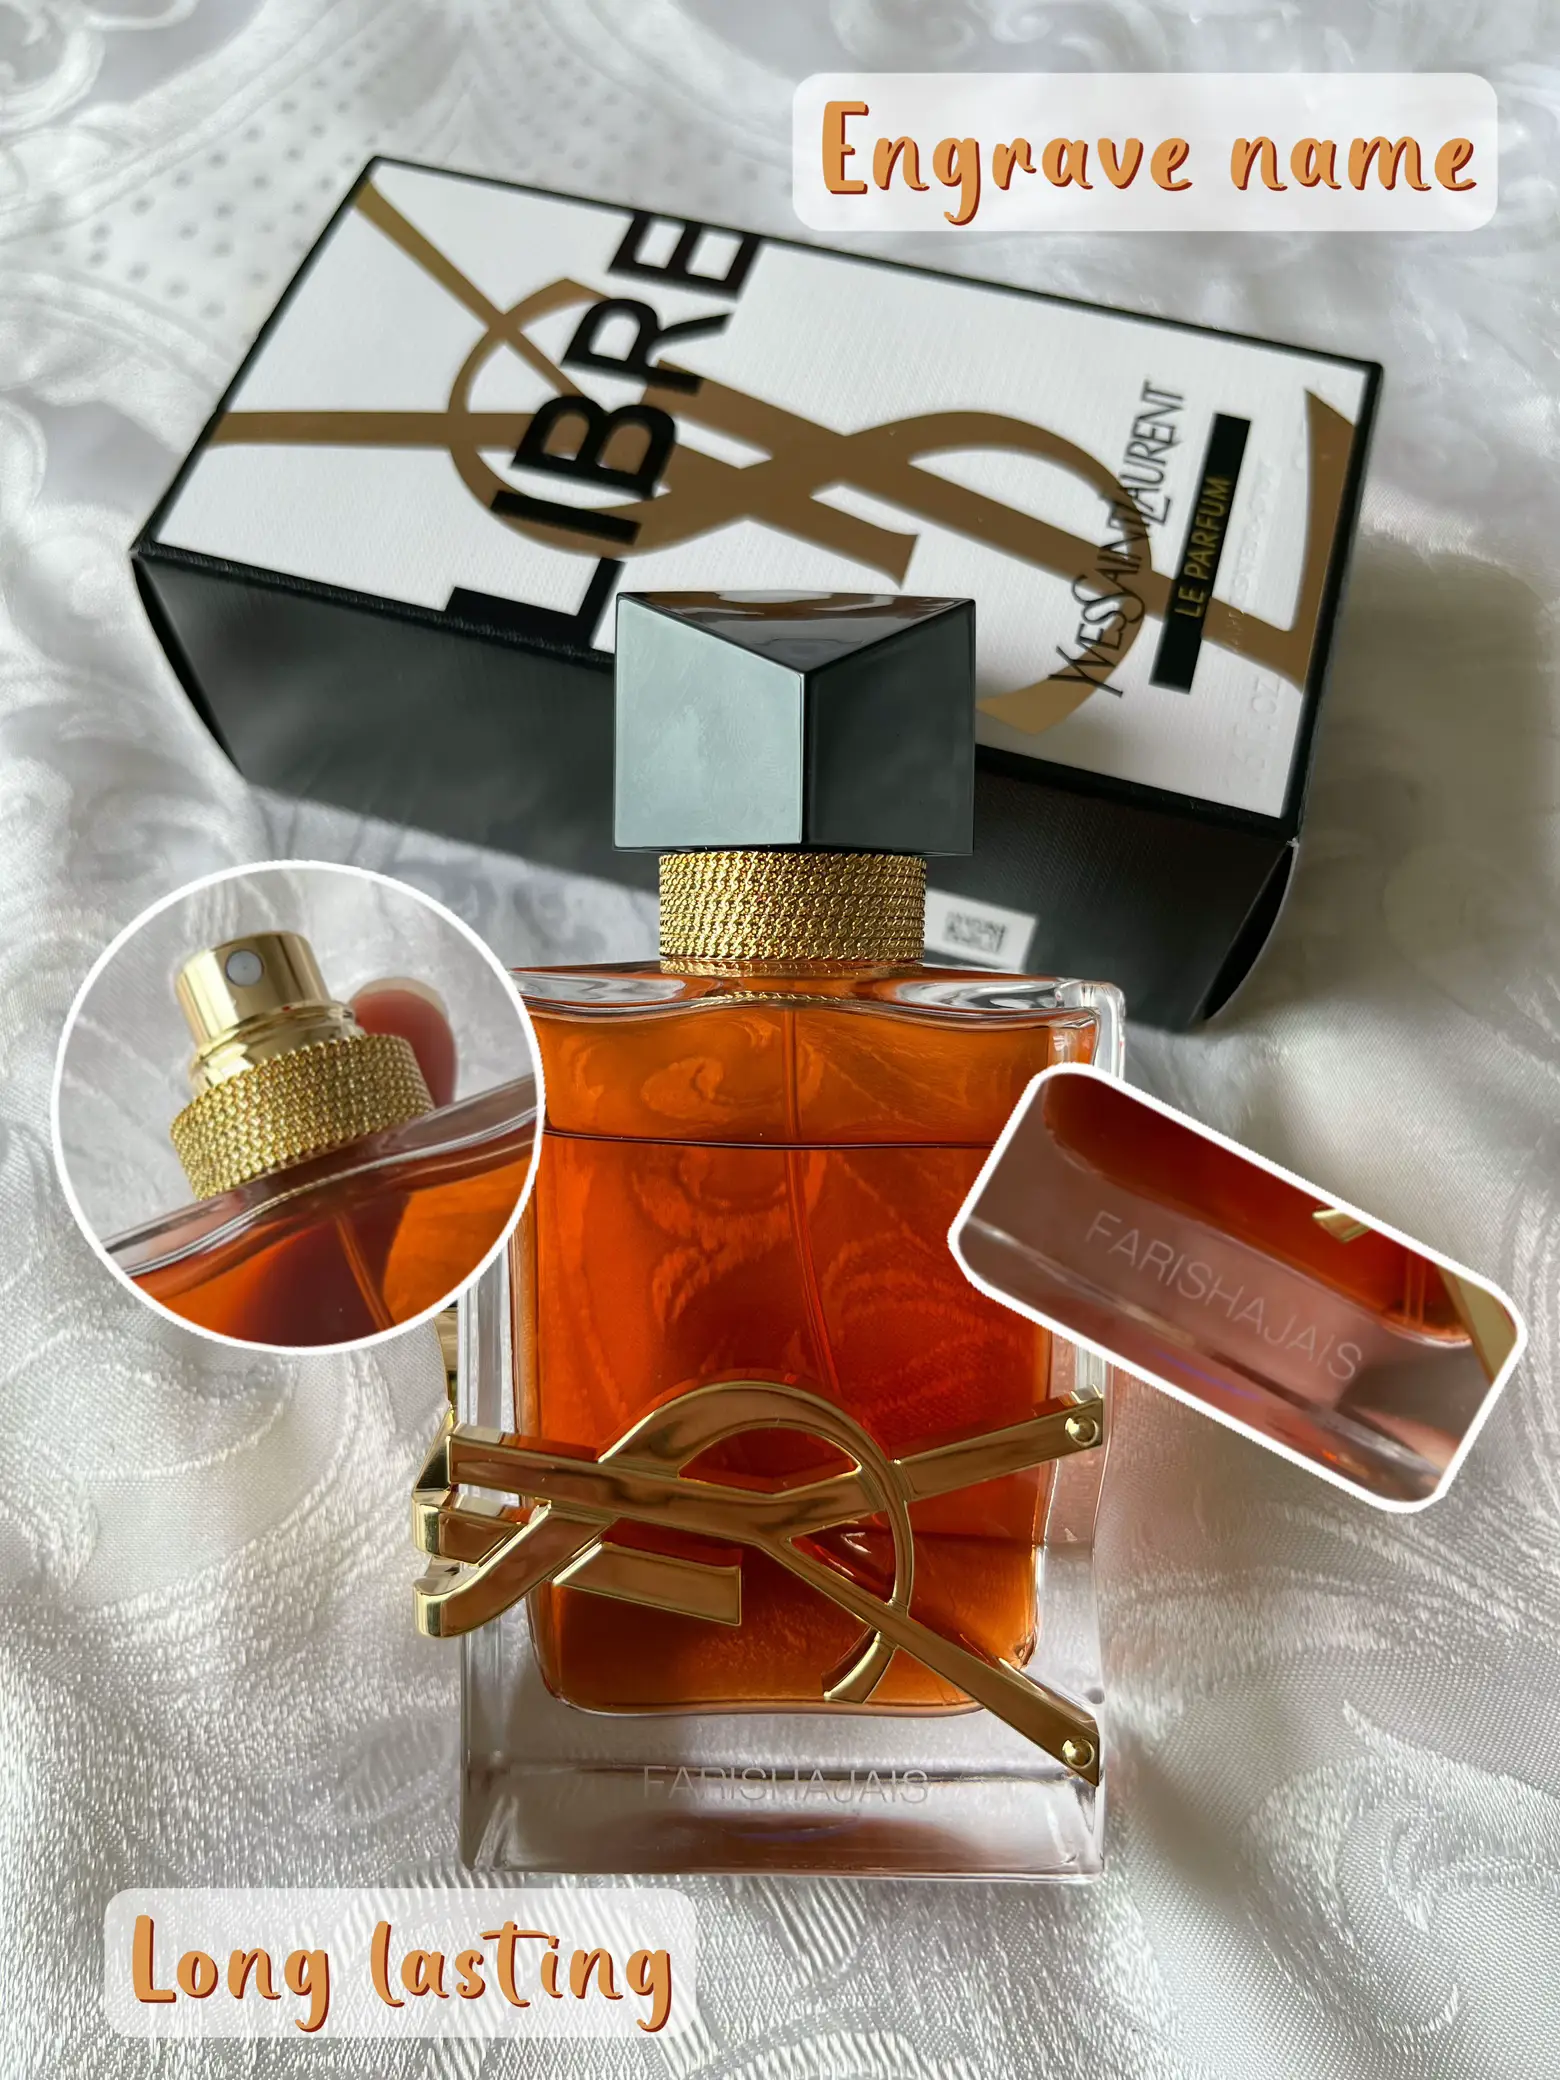 YSL - Libre Le Parfum 50 ml